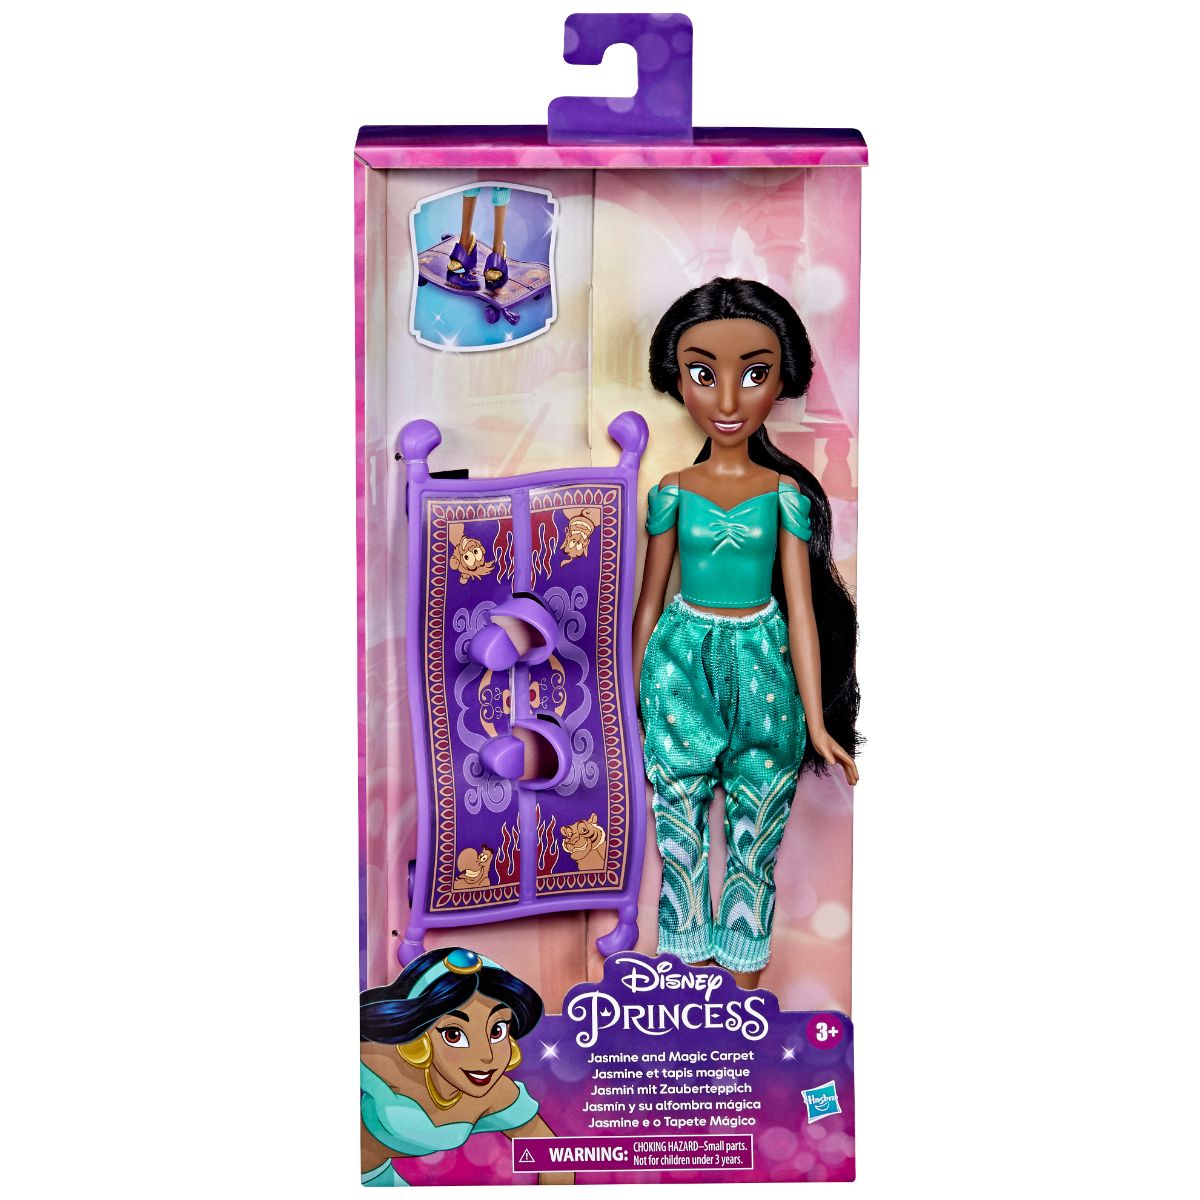 Papusa Everyday Adventures Disney Princess, Jasmine and magic carpet, F3388EU40 Adventures